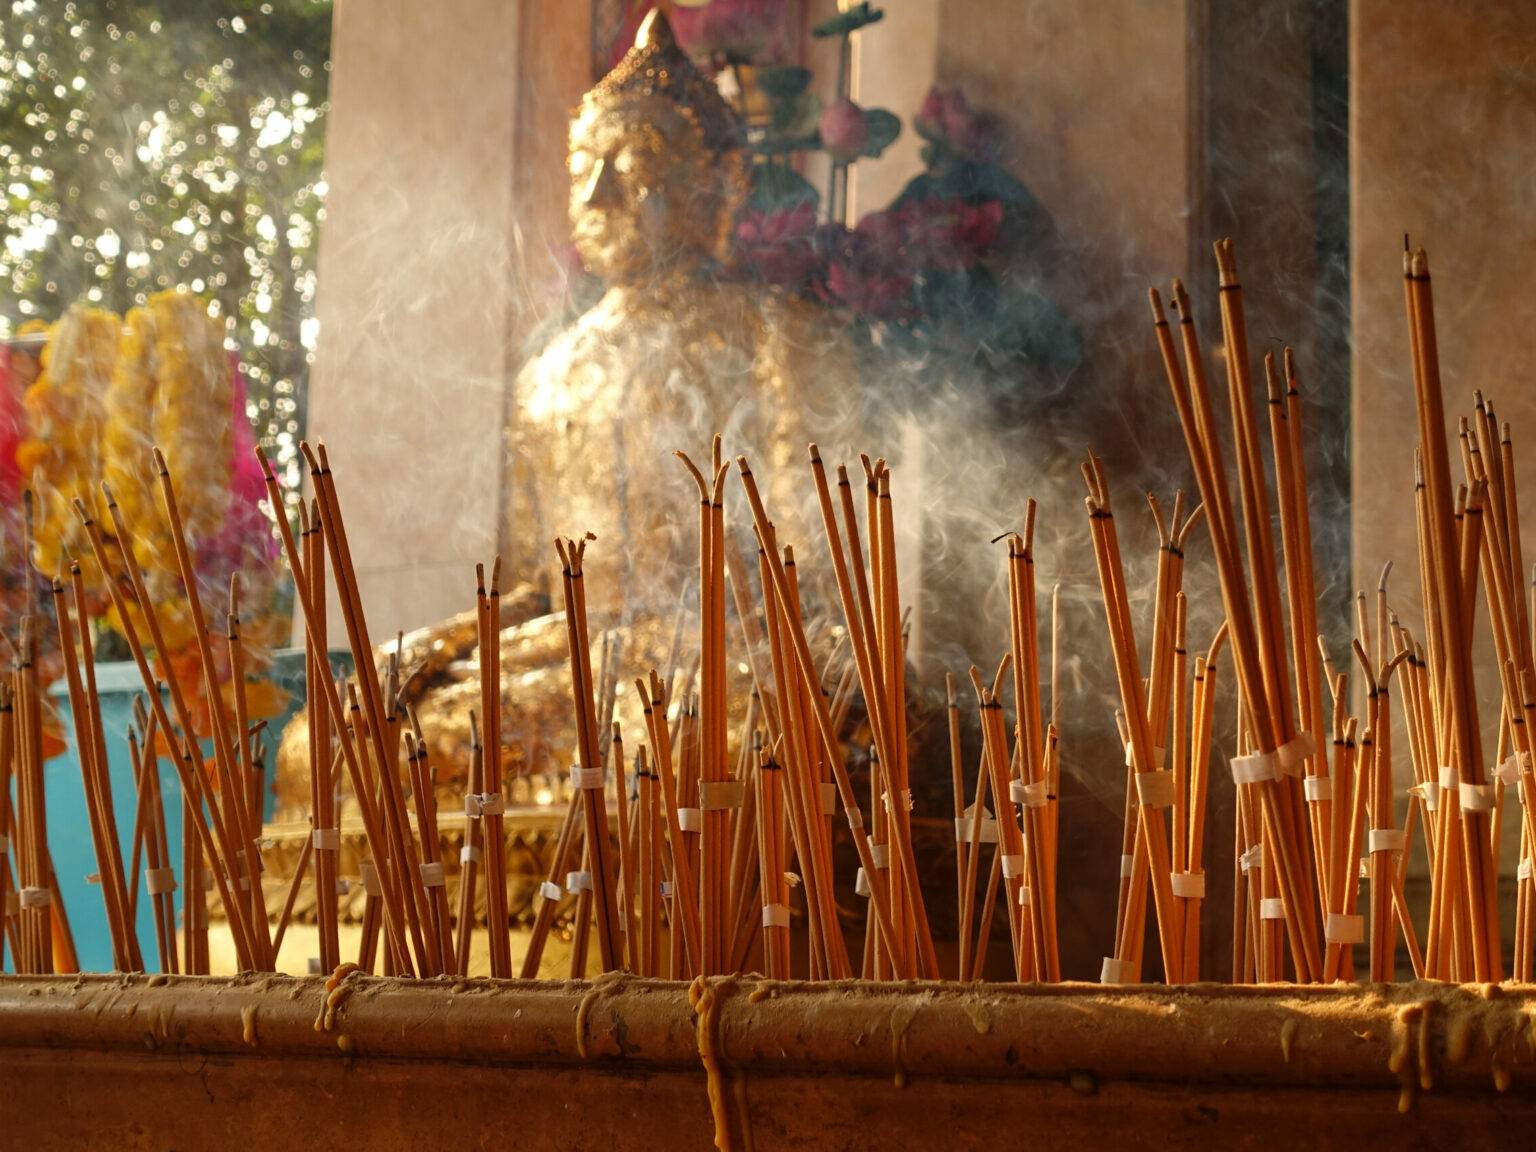 Der Rauch der angezündeten Räucherstäbchen in einem buddhistischen verschleiern den Blick auf eine Buddha-Statue.